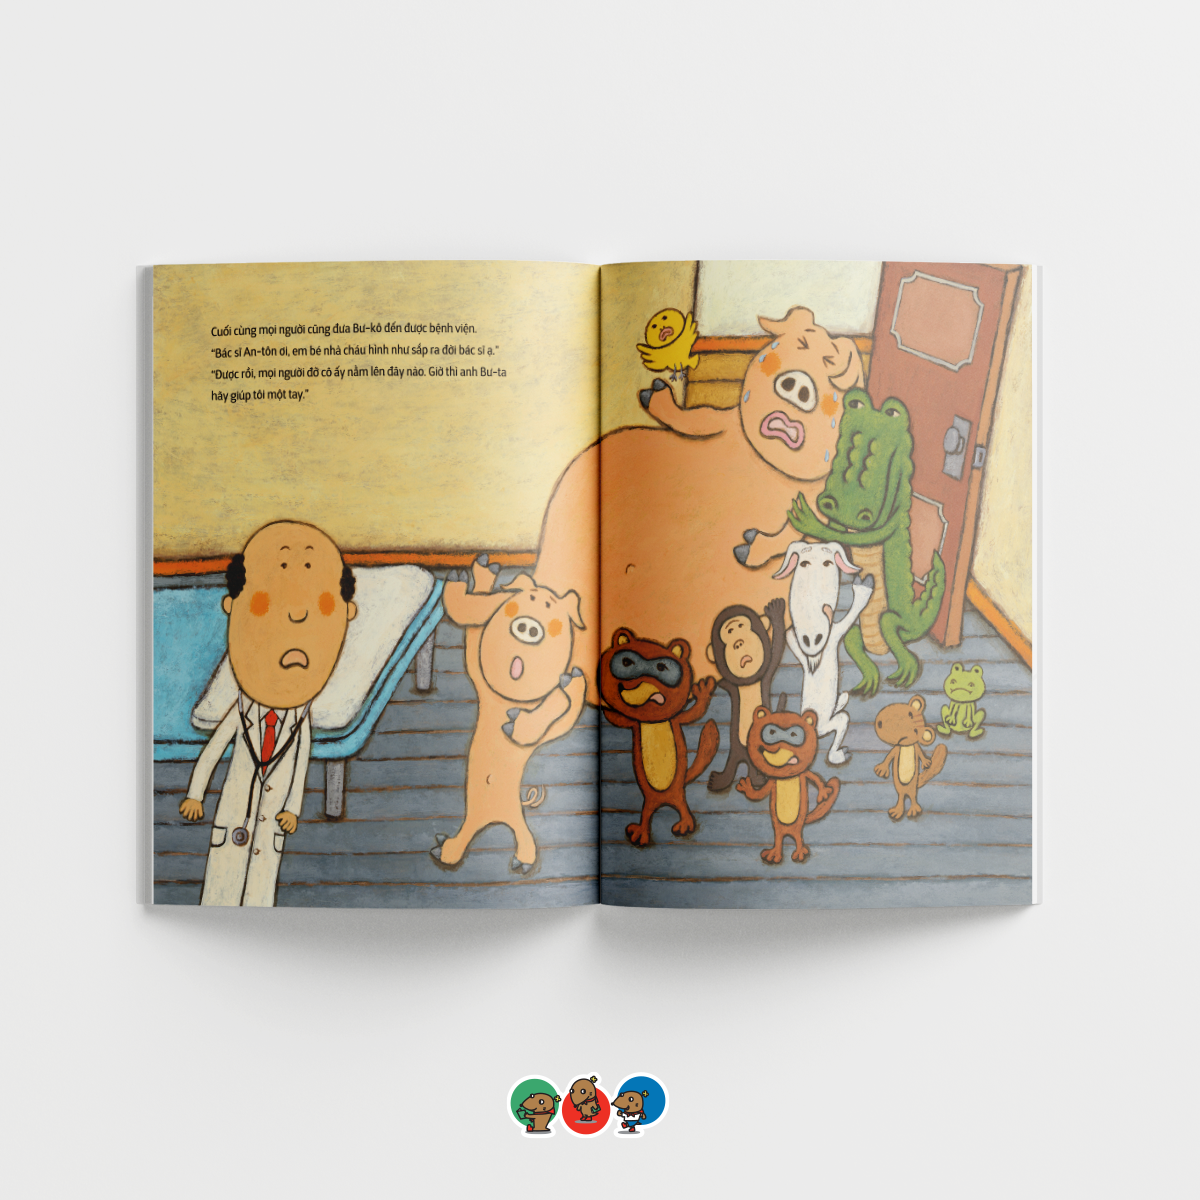 Sách cho bé từ 3 tuổi - Bộ 4 cuốn Phát triển EQ Bác sĩ Anton